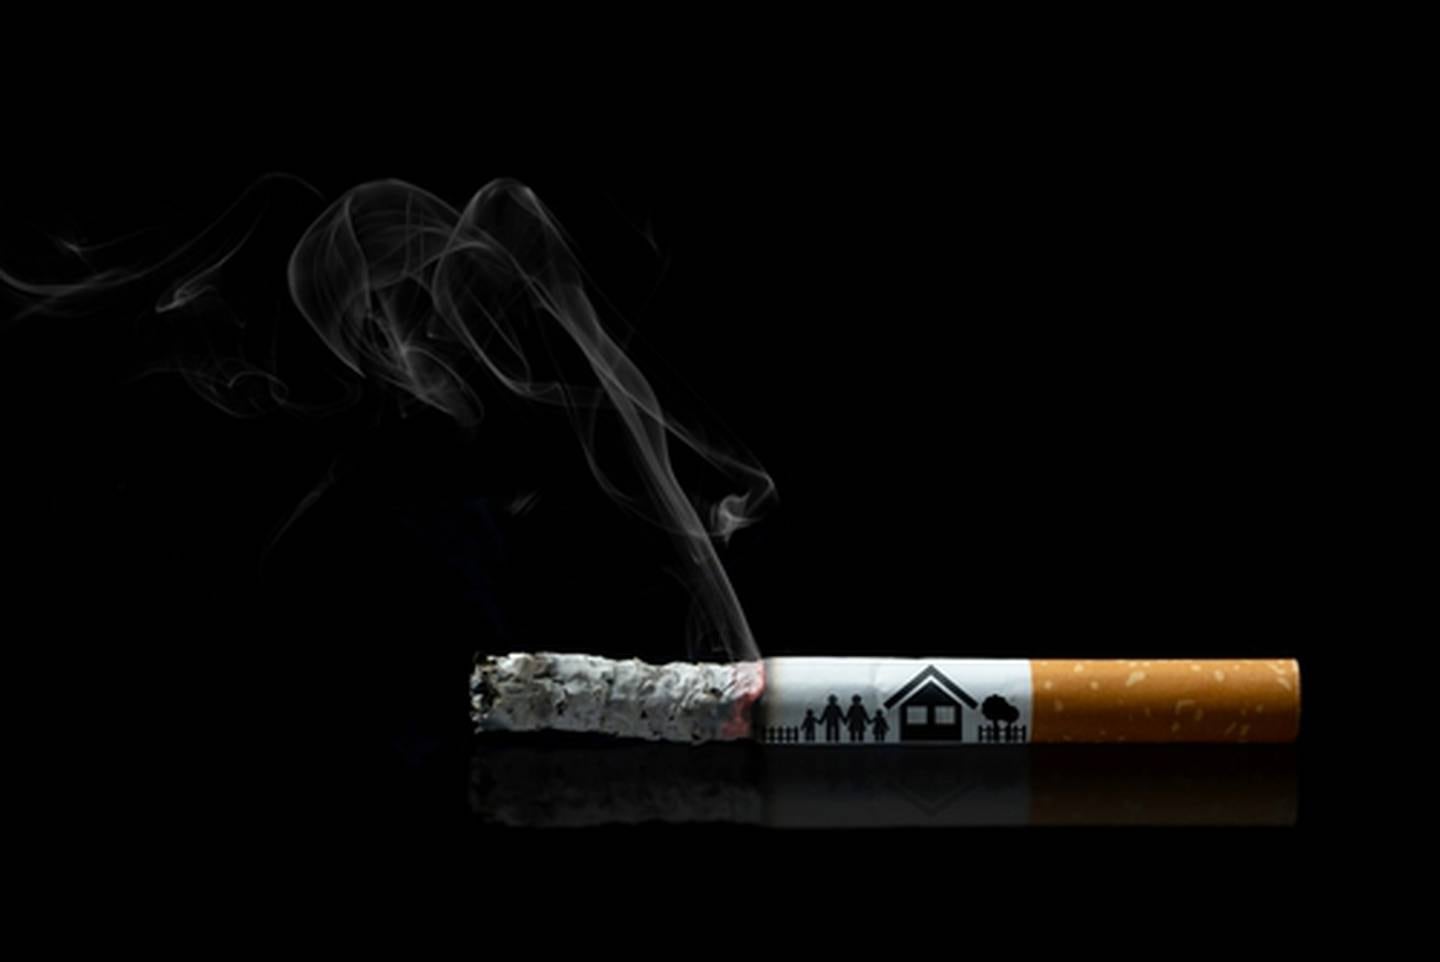 La décima conferencia del Convenio Marco para el Control del Tabaco (FCTC) culminó este sábado en Panamá con consensos para proteger el medio ambiente y los derechos humanos, pero marcadas diferencias sobre la medición y control de sustancias tóxicas en los productos de tabaco.